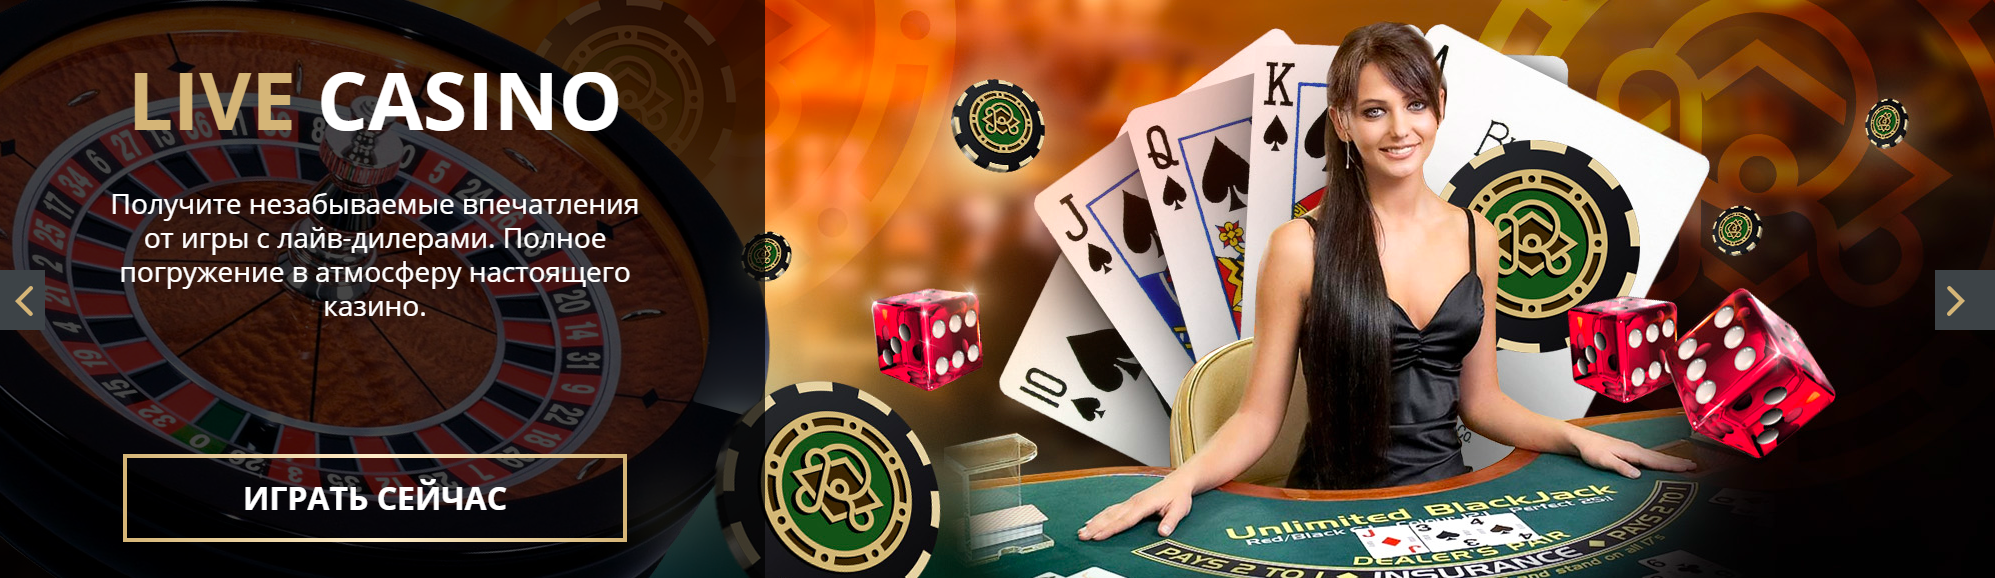 Riobet онлайн казино играть казино онлайн азарт плей работающее зеркало